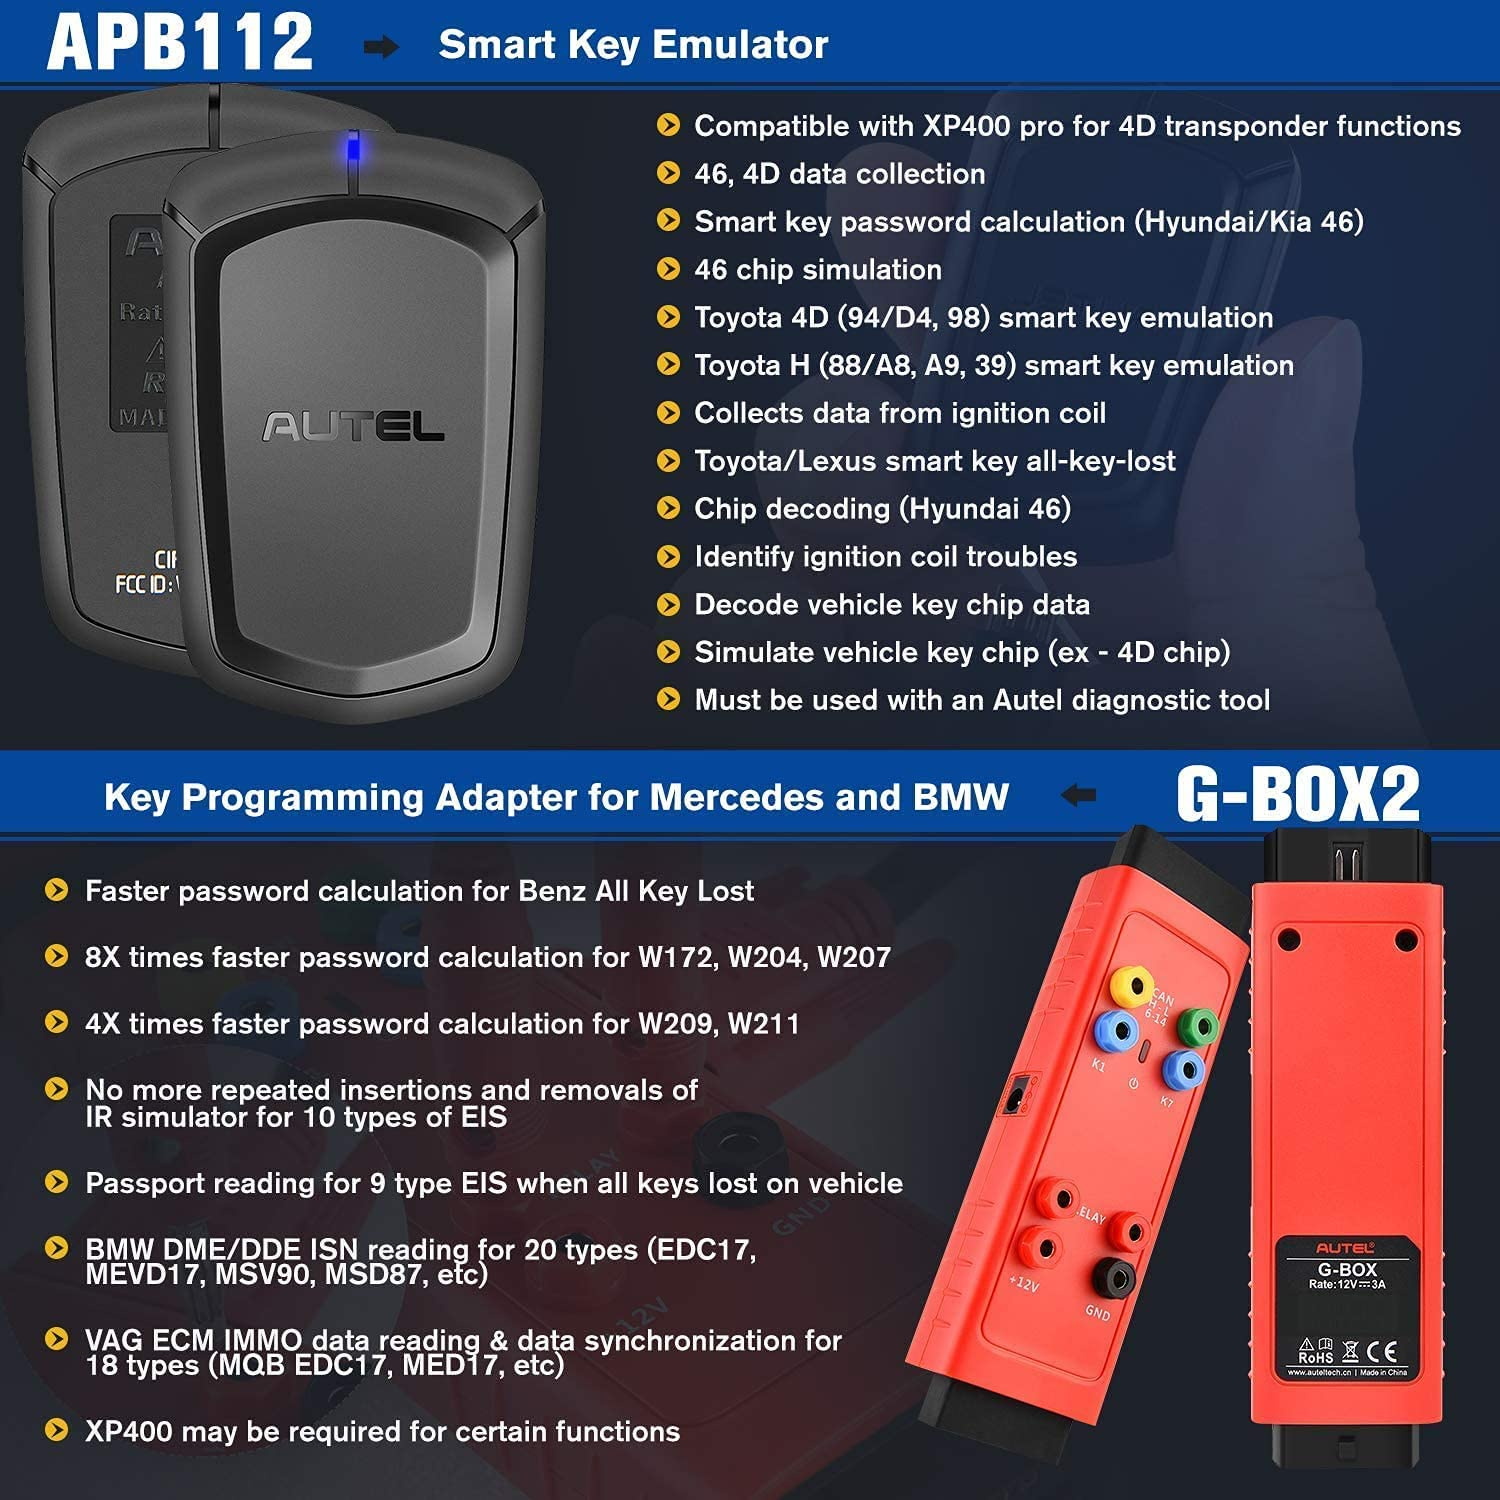 Autel IM608pro plus G-box2 and APB112